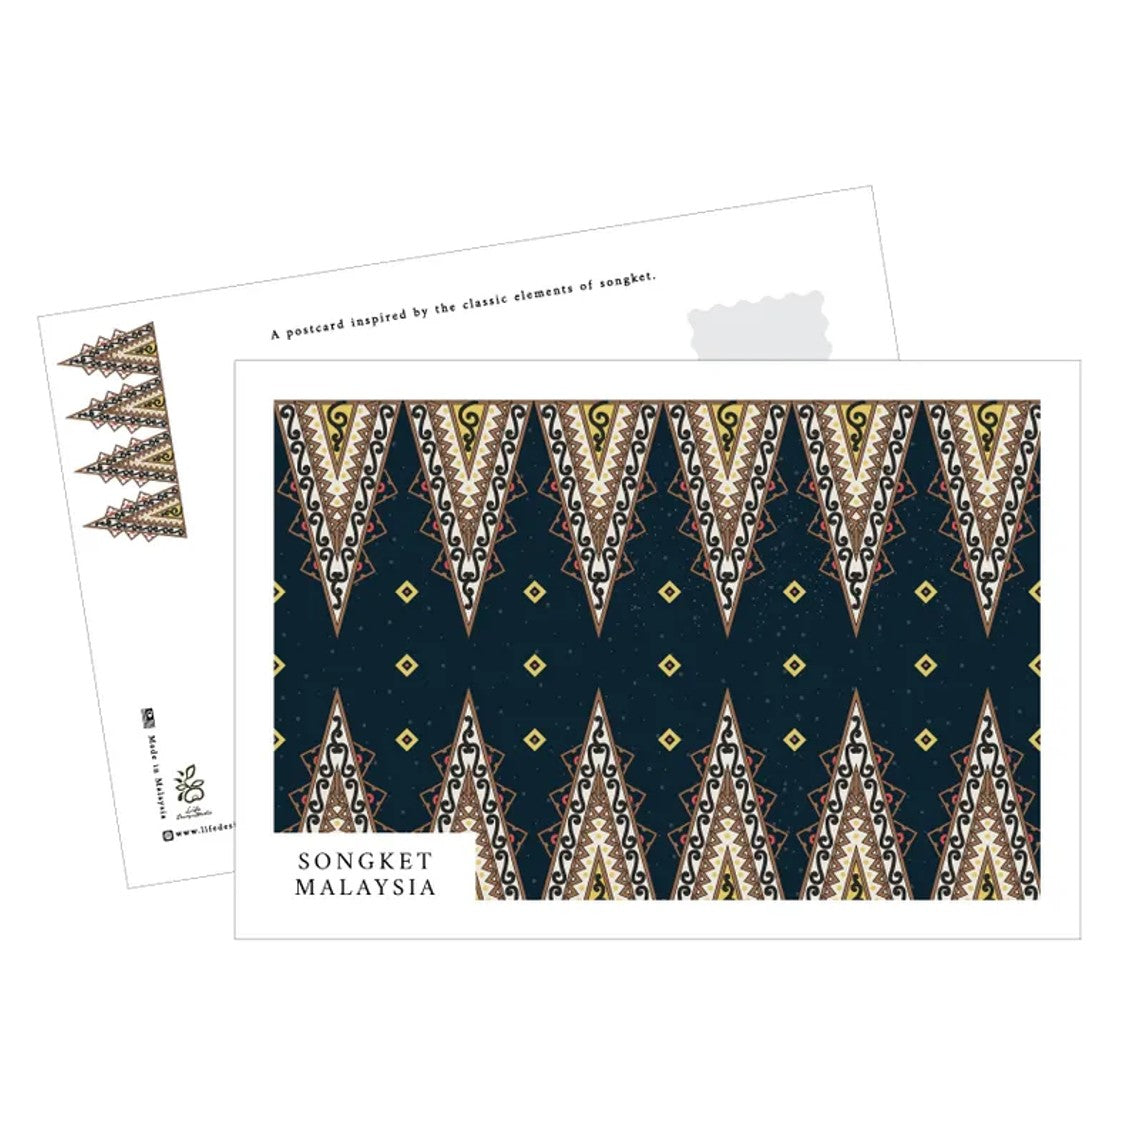 Batik Postcard Set | Type 2